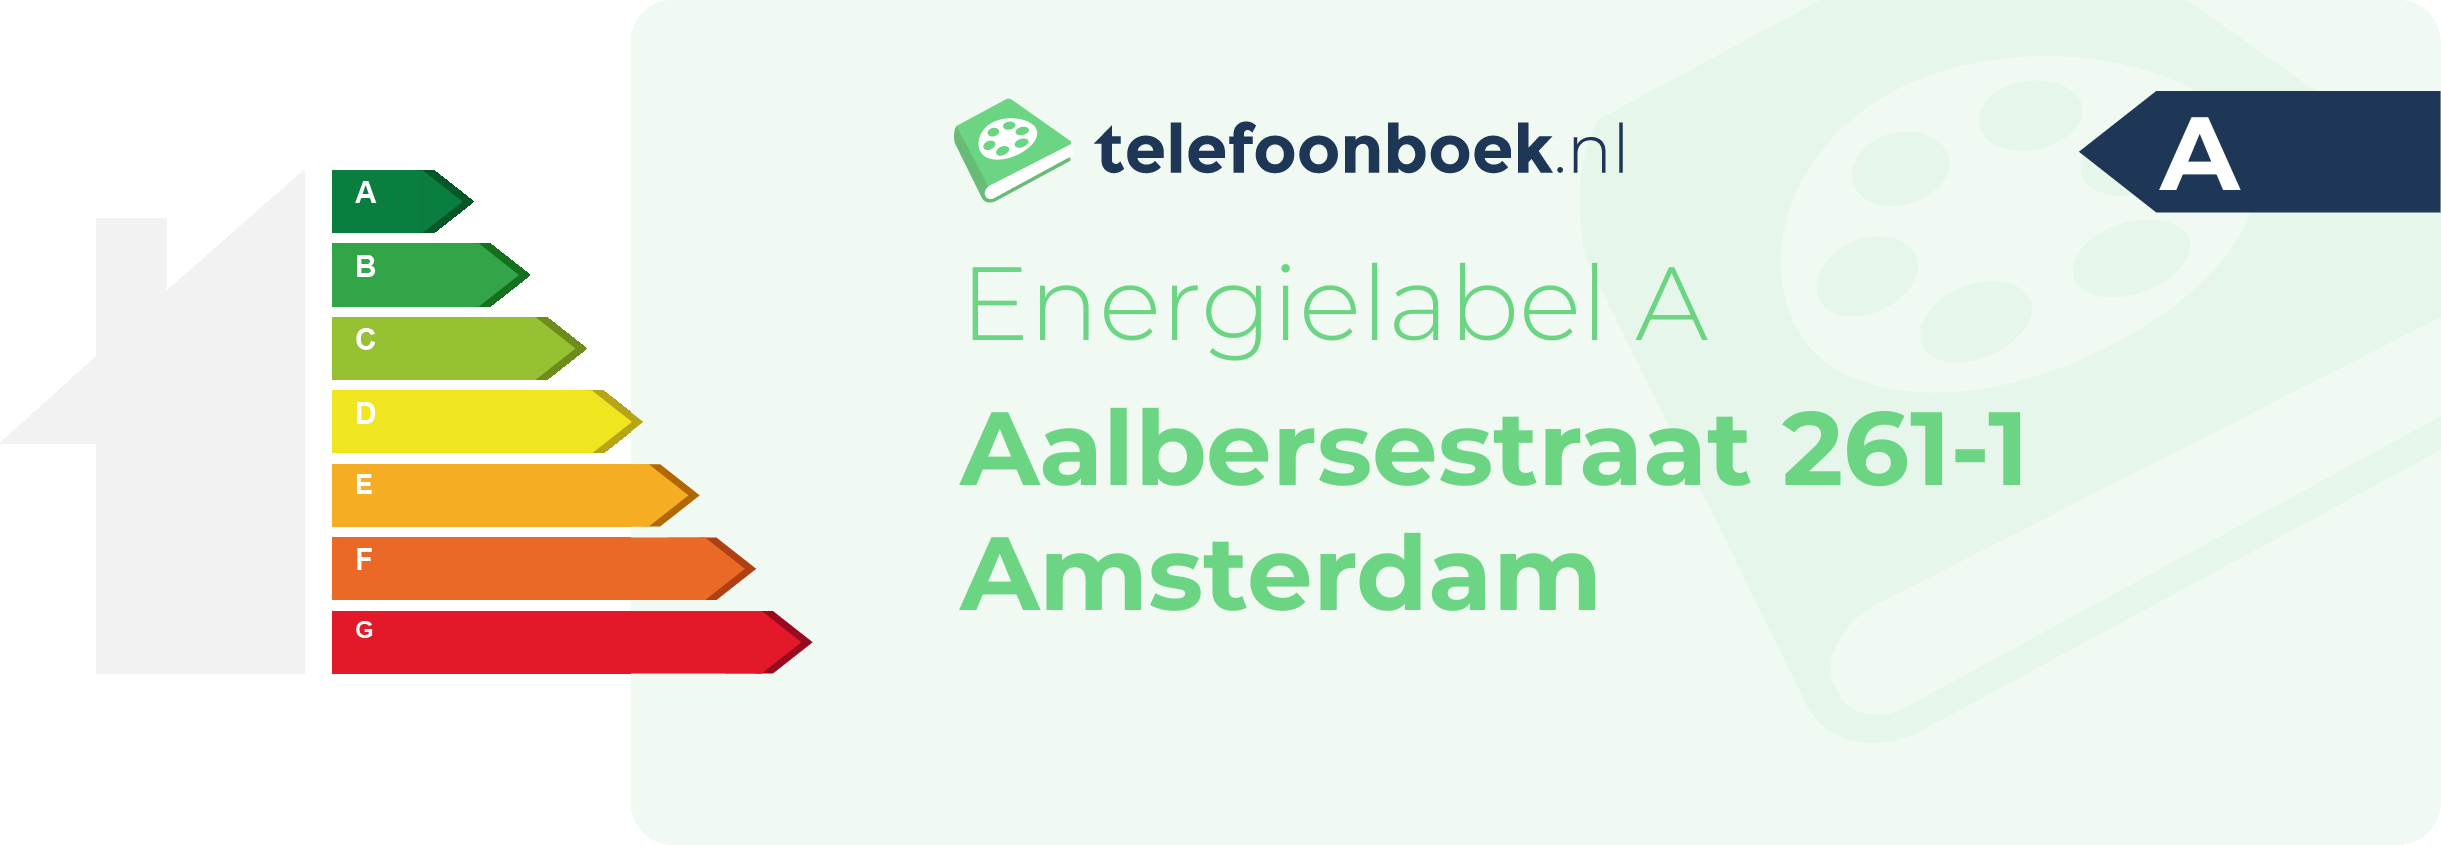 Energielabel Aalbersestraat 261-1 Amsterdam